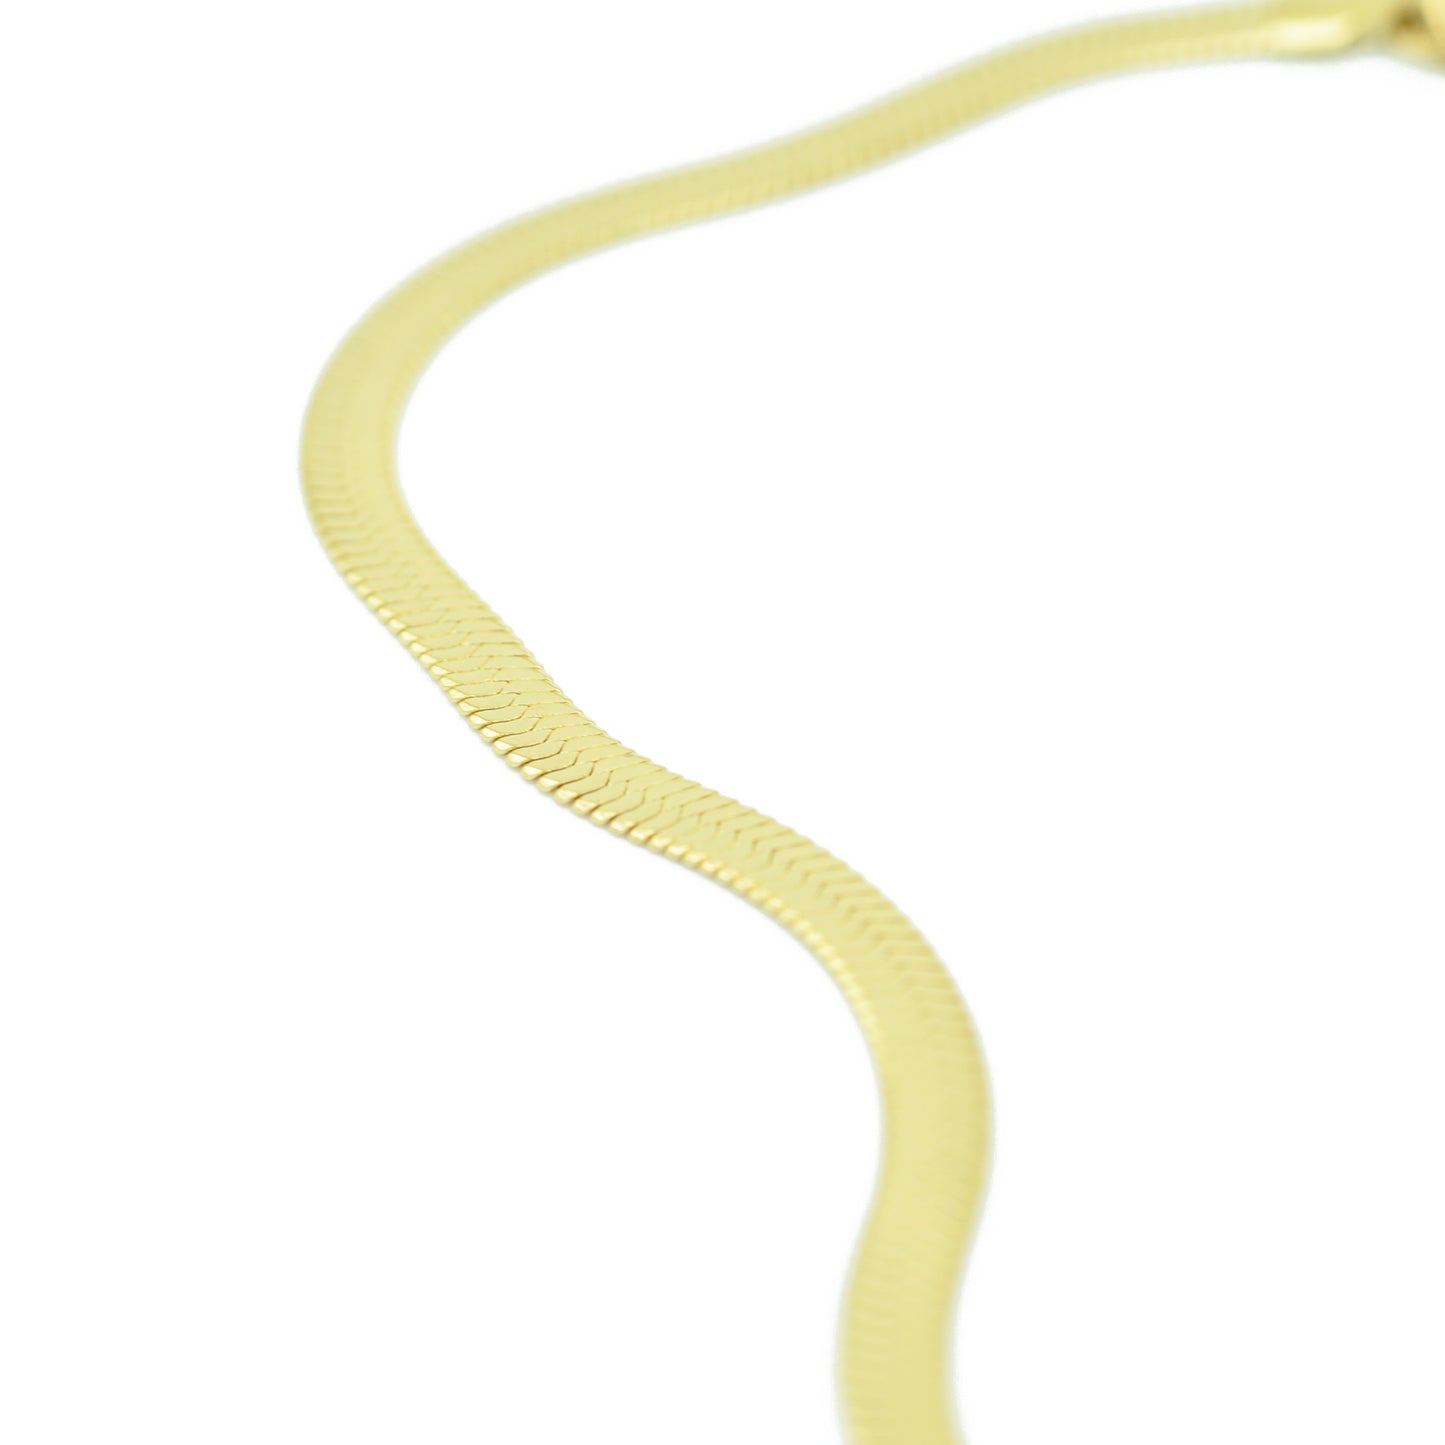 Edelstahl Schlangenkette Halskette flach / 40 + 7 cm